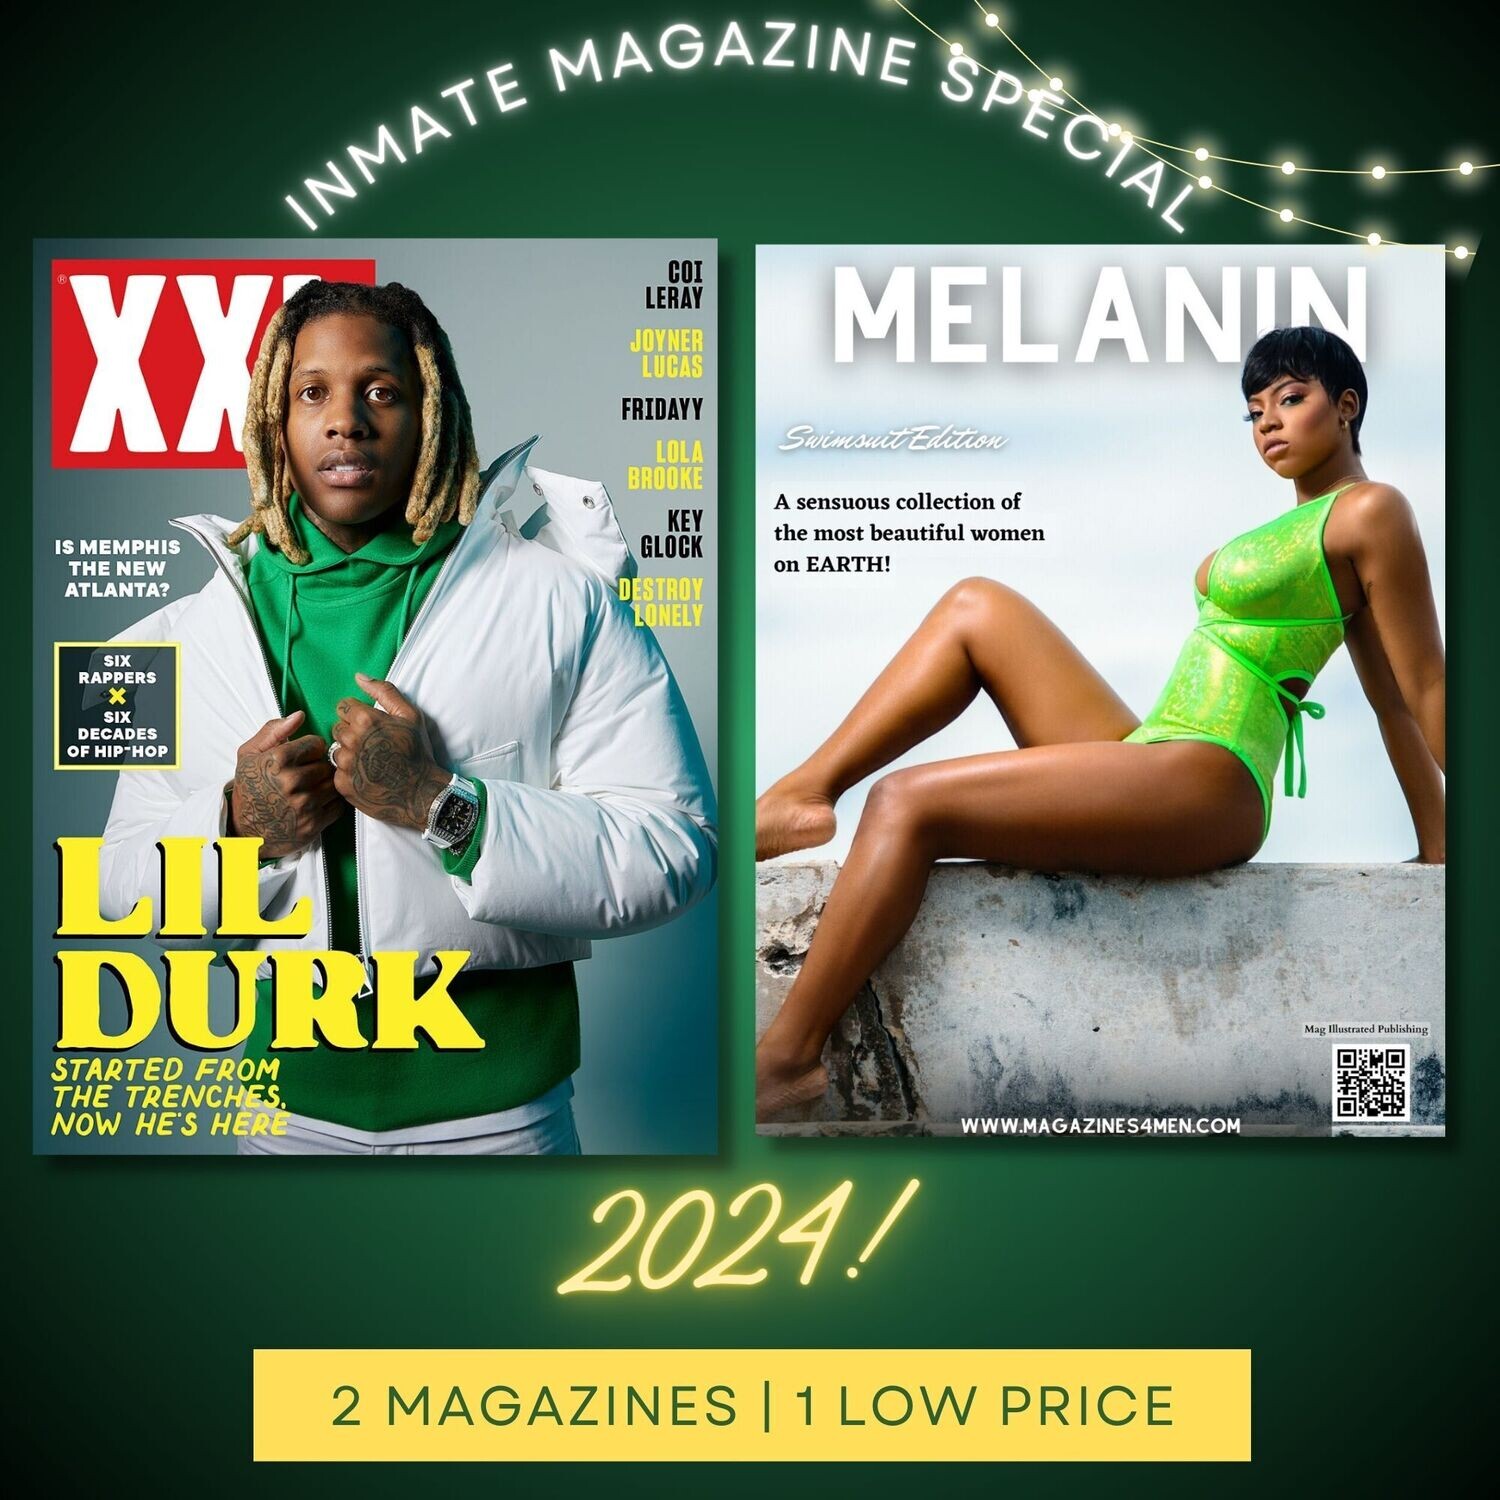 Magazines for Inmates 2024 Magazine XXL/MELANIN Bundle